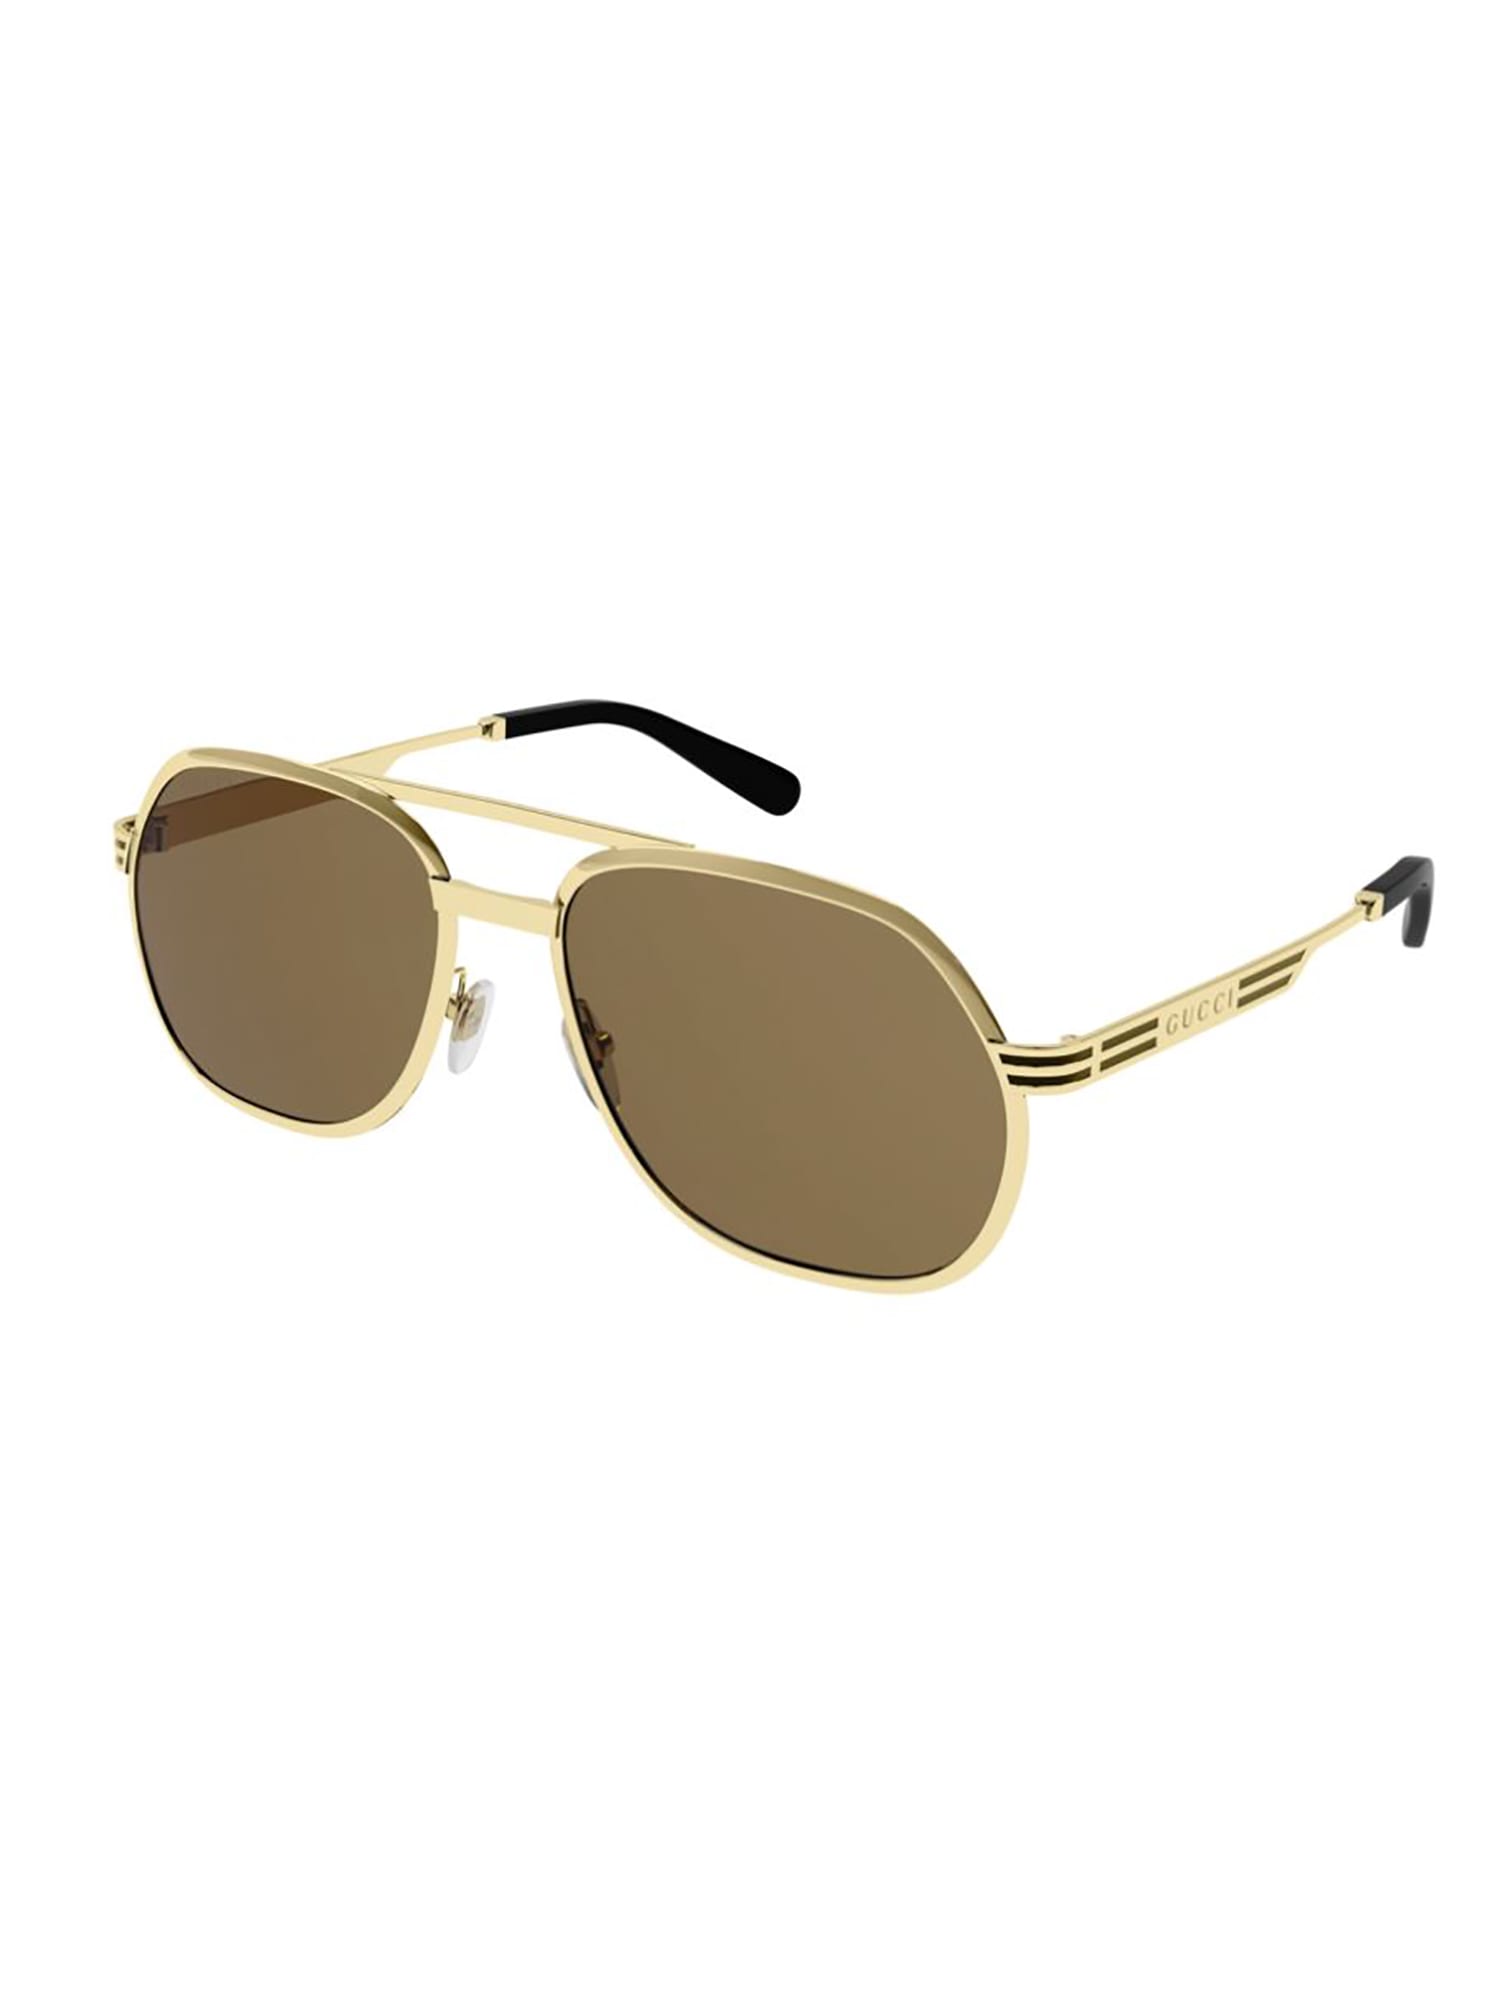 Gucci GG0981S Sunglasses